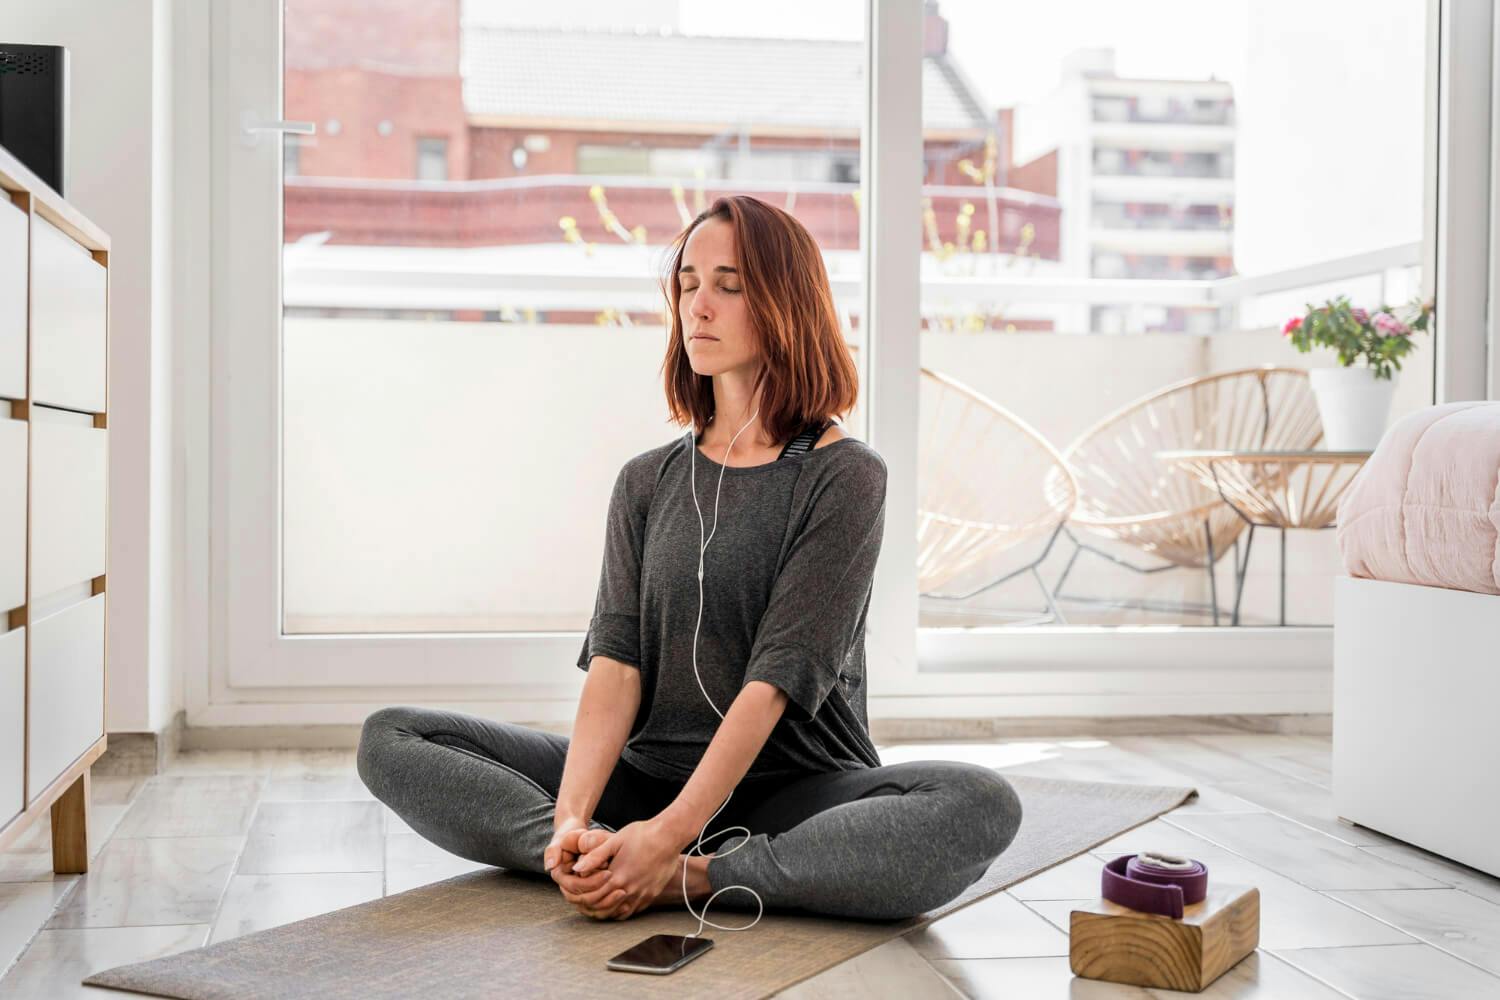 Una mujer practicando técnicas de relajación en un ambiente tranquilo para manejar la ansiedad y mejorar su autocontrol emocional.